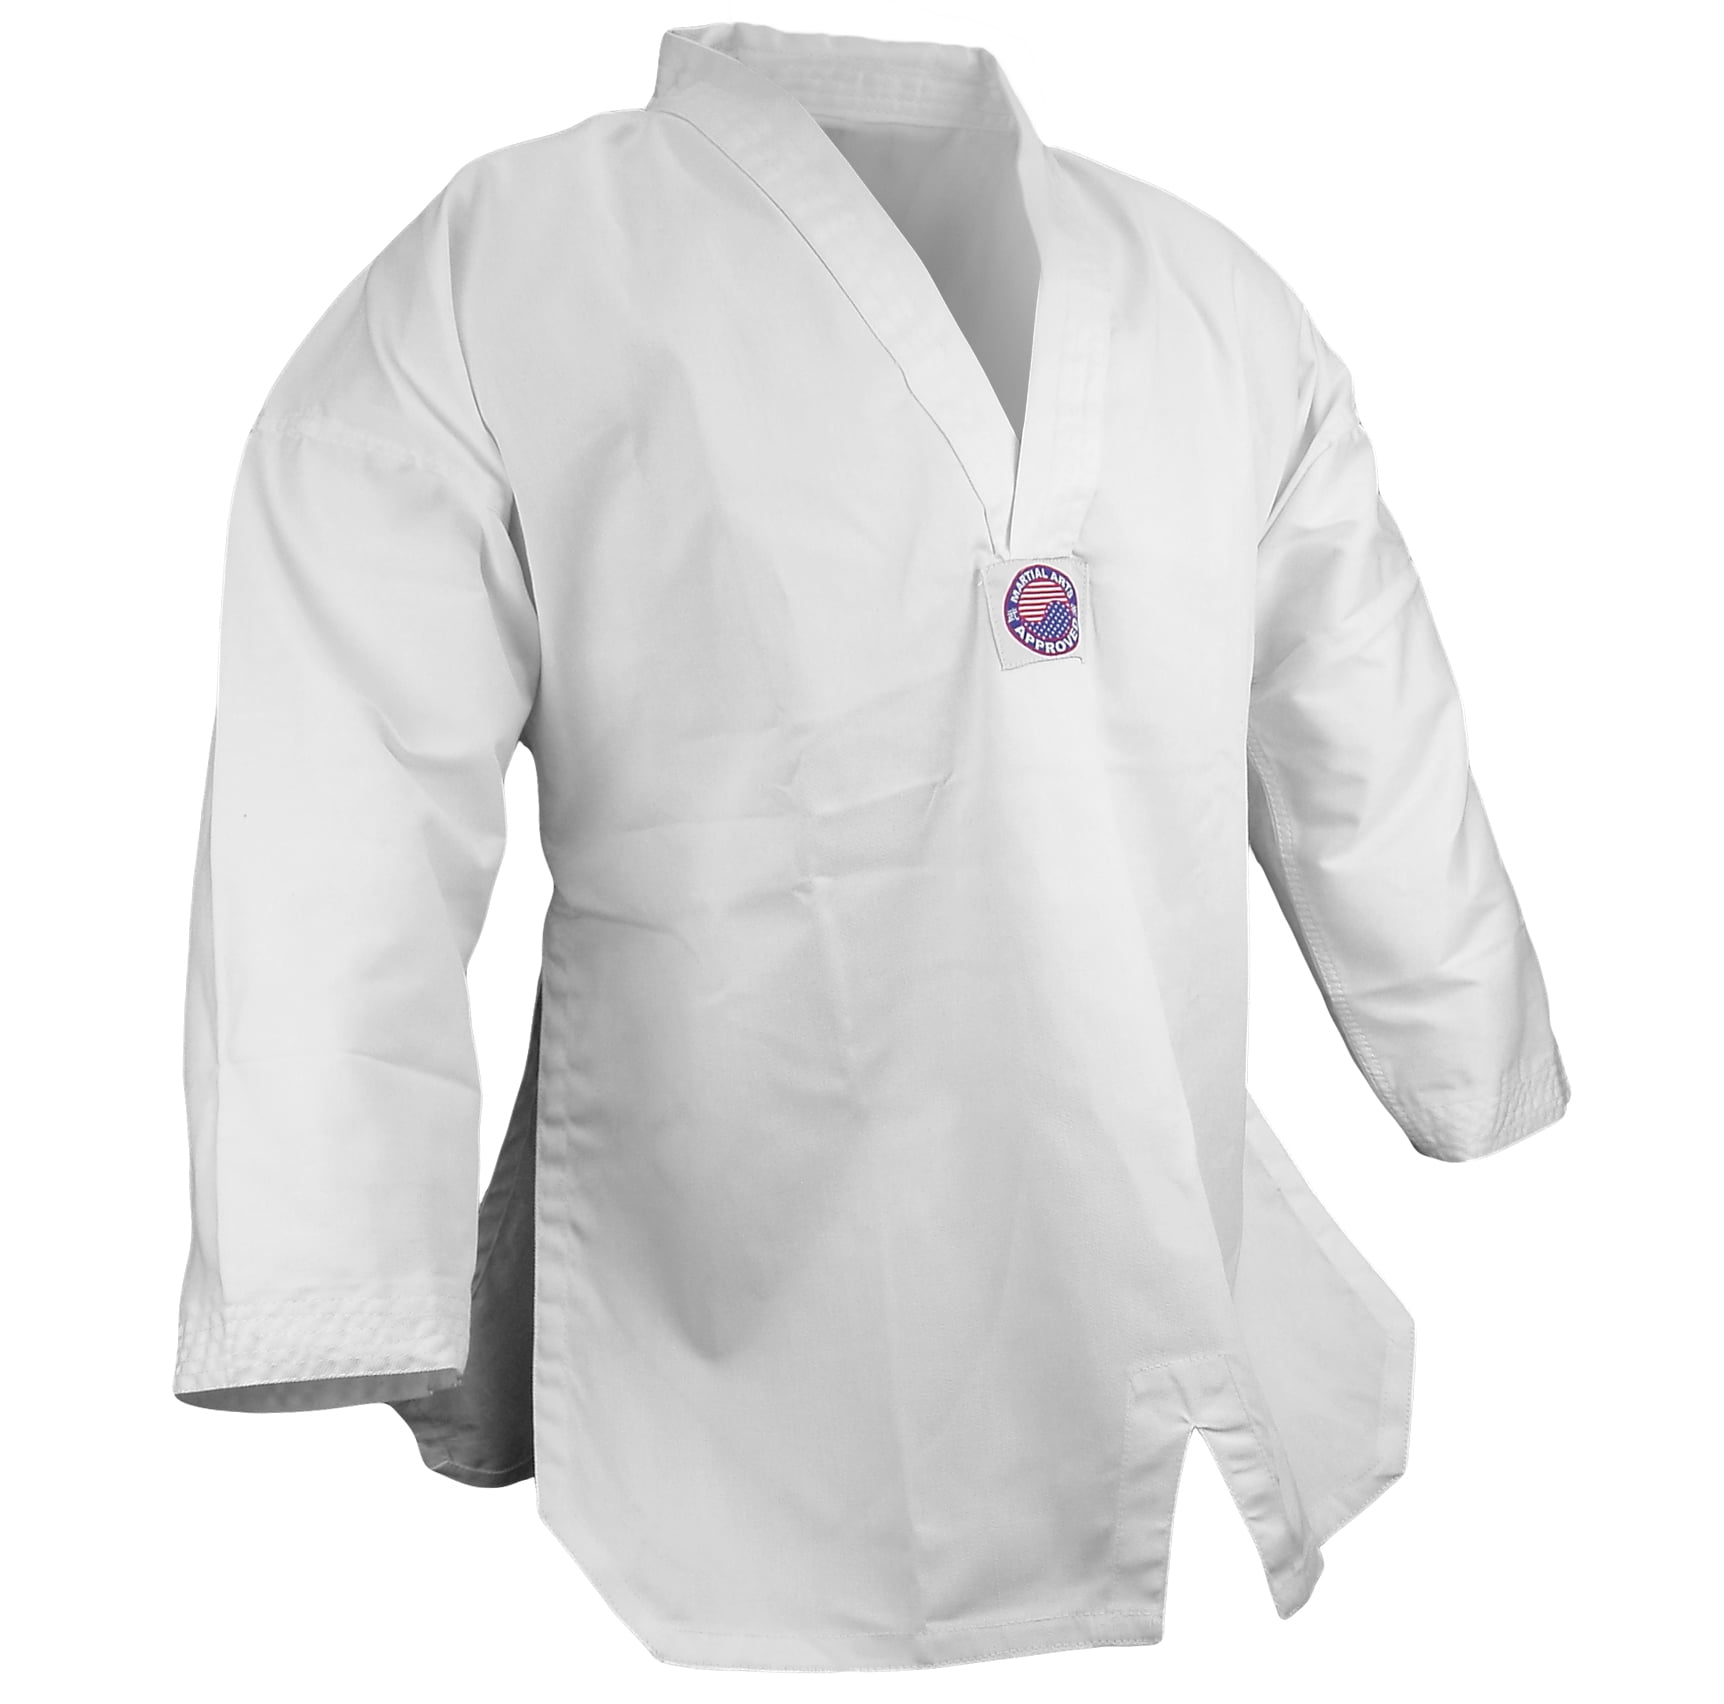 Martial Arts V-Neck 7.5 oz Jacket Only Taekwondo Light Weight Uniform Tae Kwon Do Gi Top 